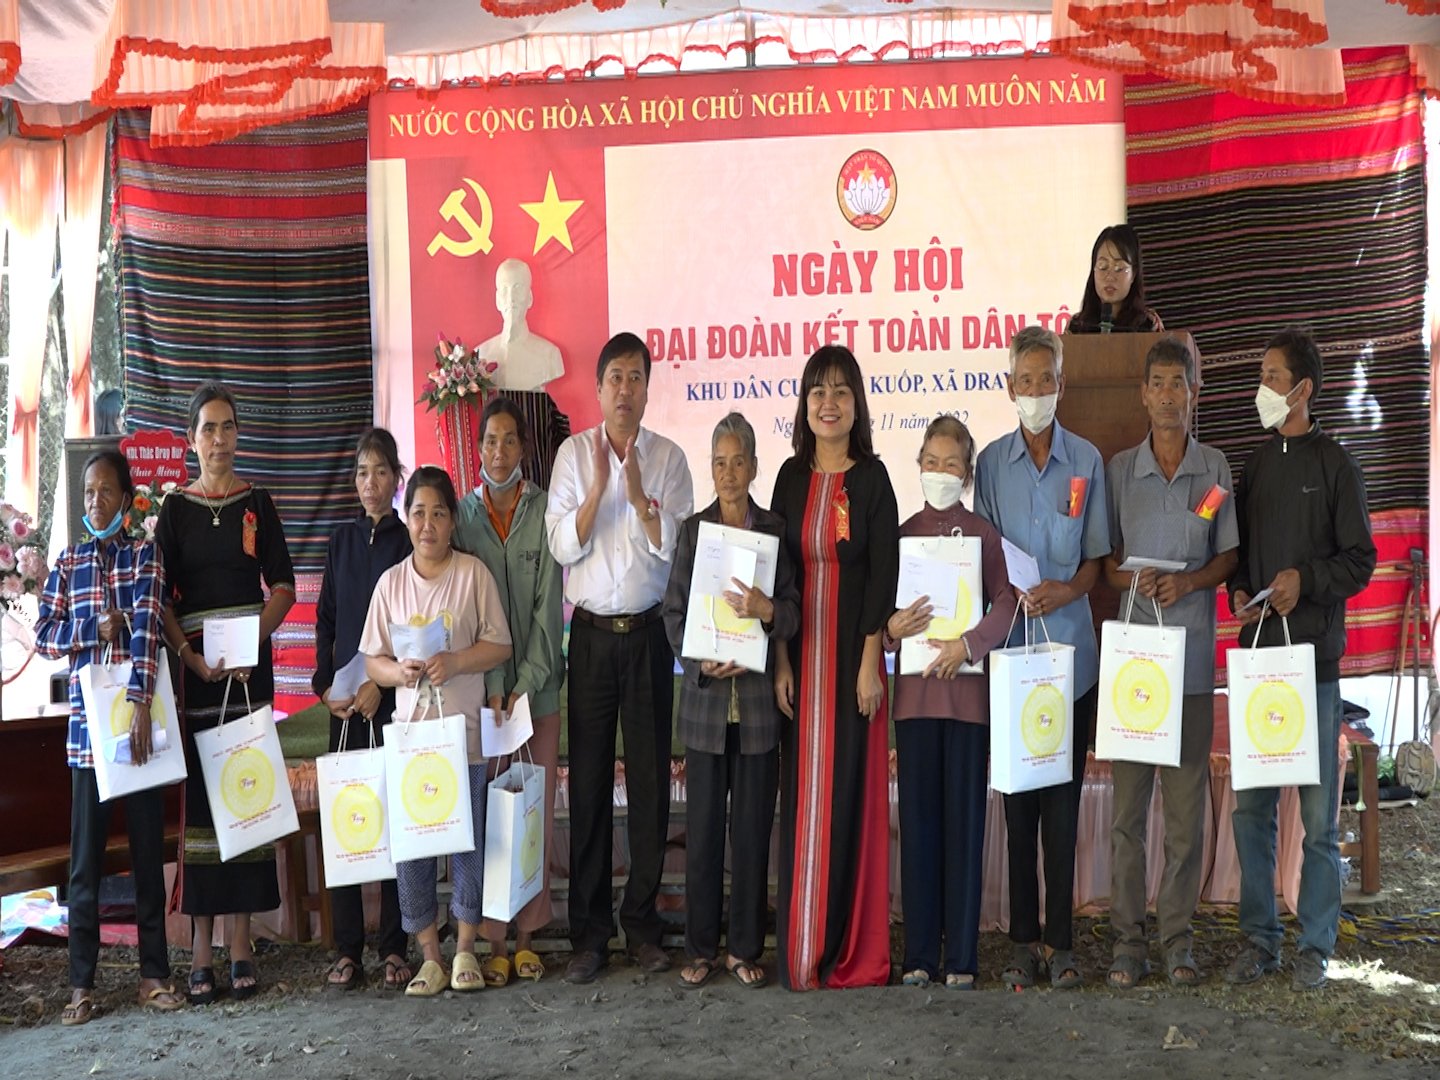 Ngày hội Đại đoàn kết toàn dân tộc tại xã Dray Sáp